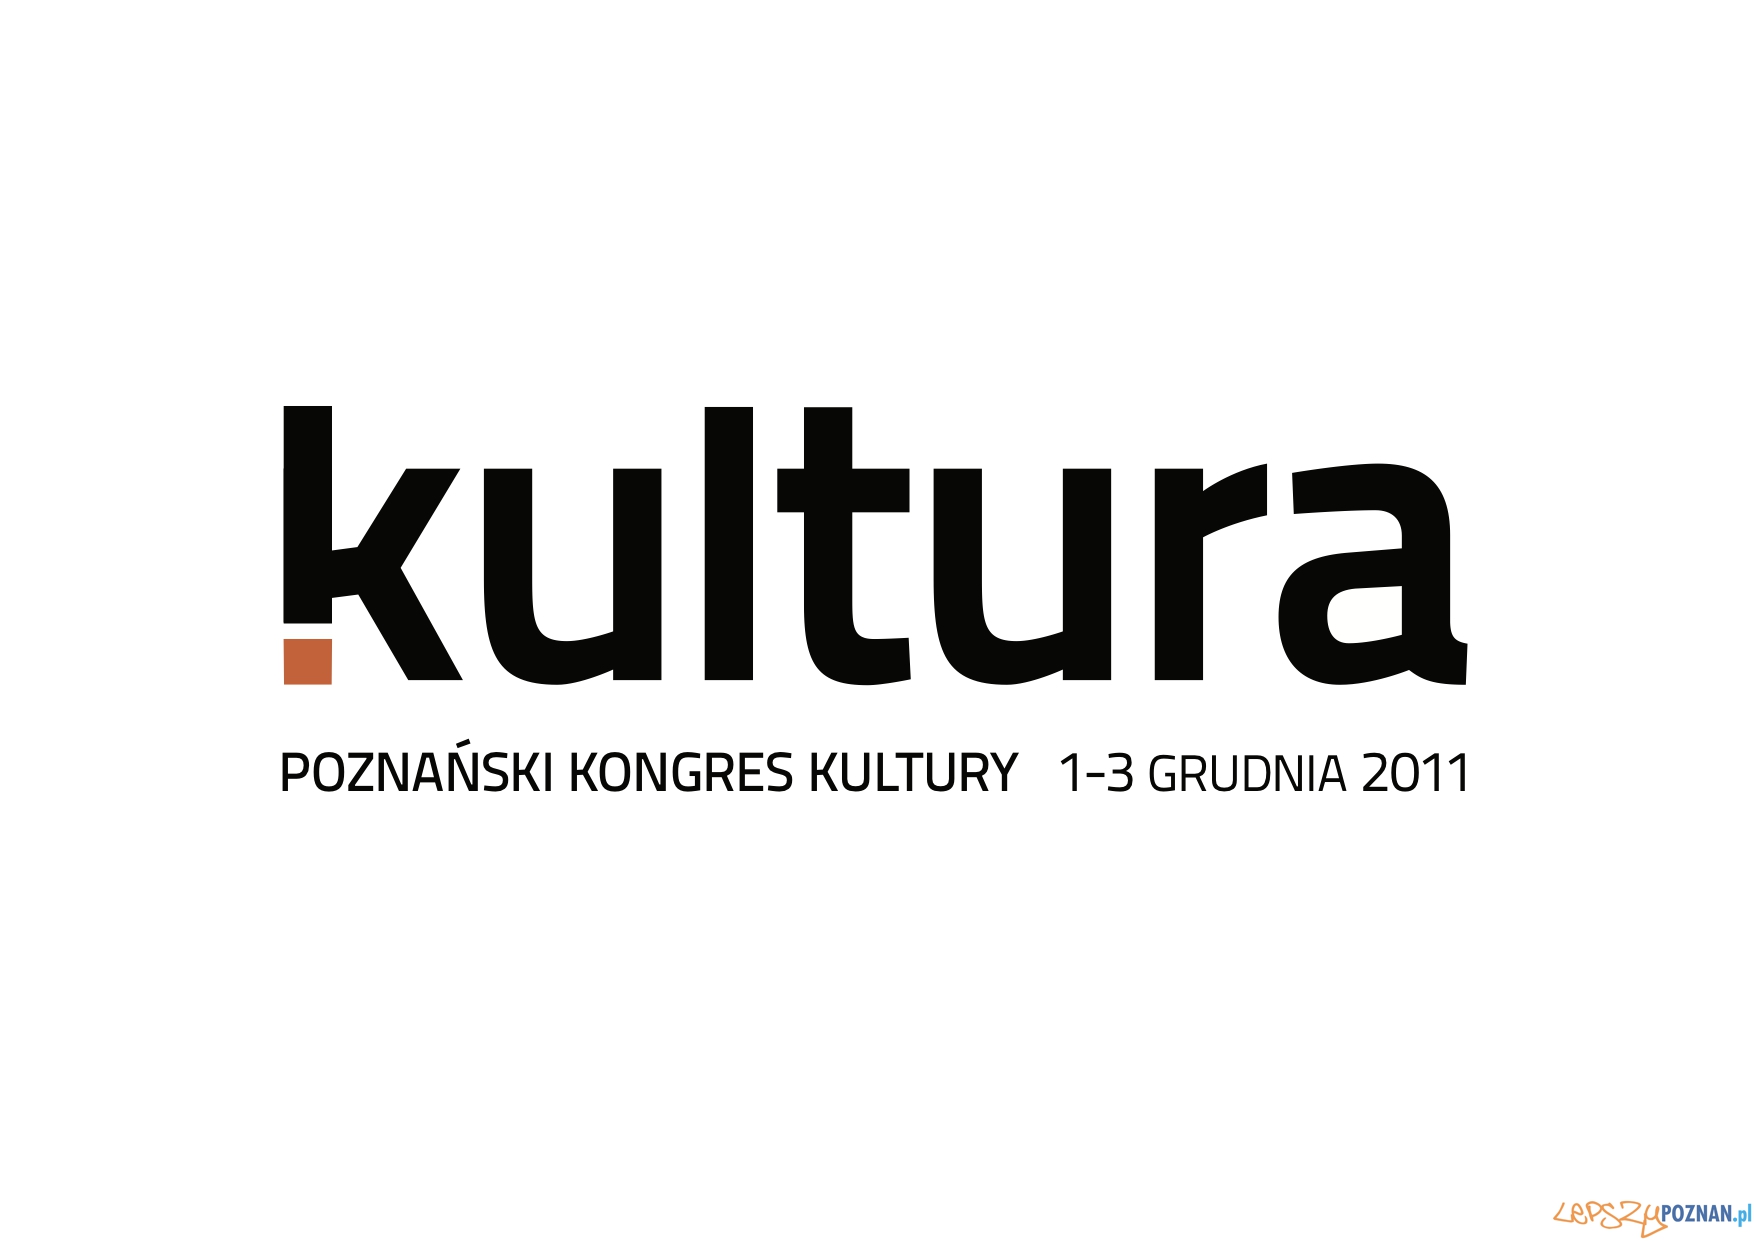 Poznański Kongres Kultury  Foto: Poznański Kongres Kultury